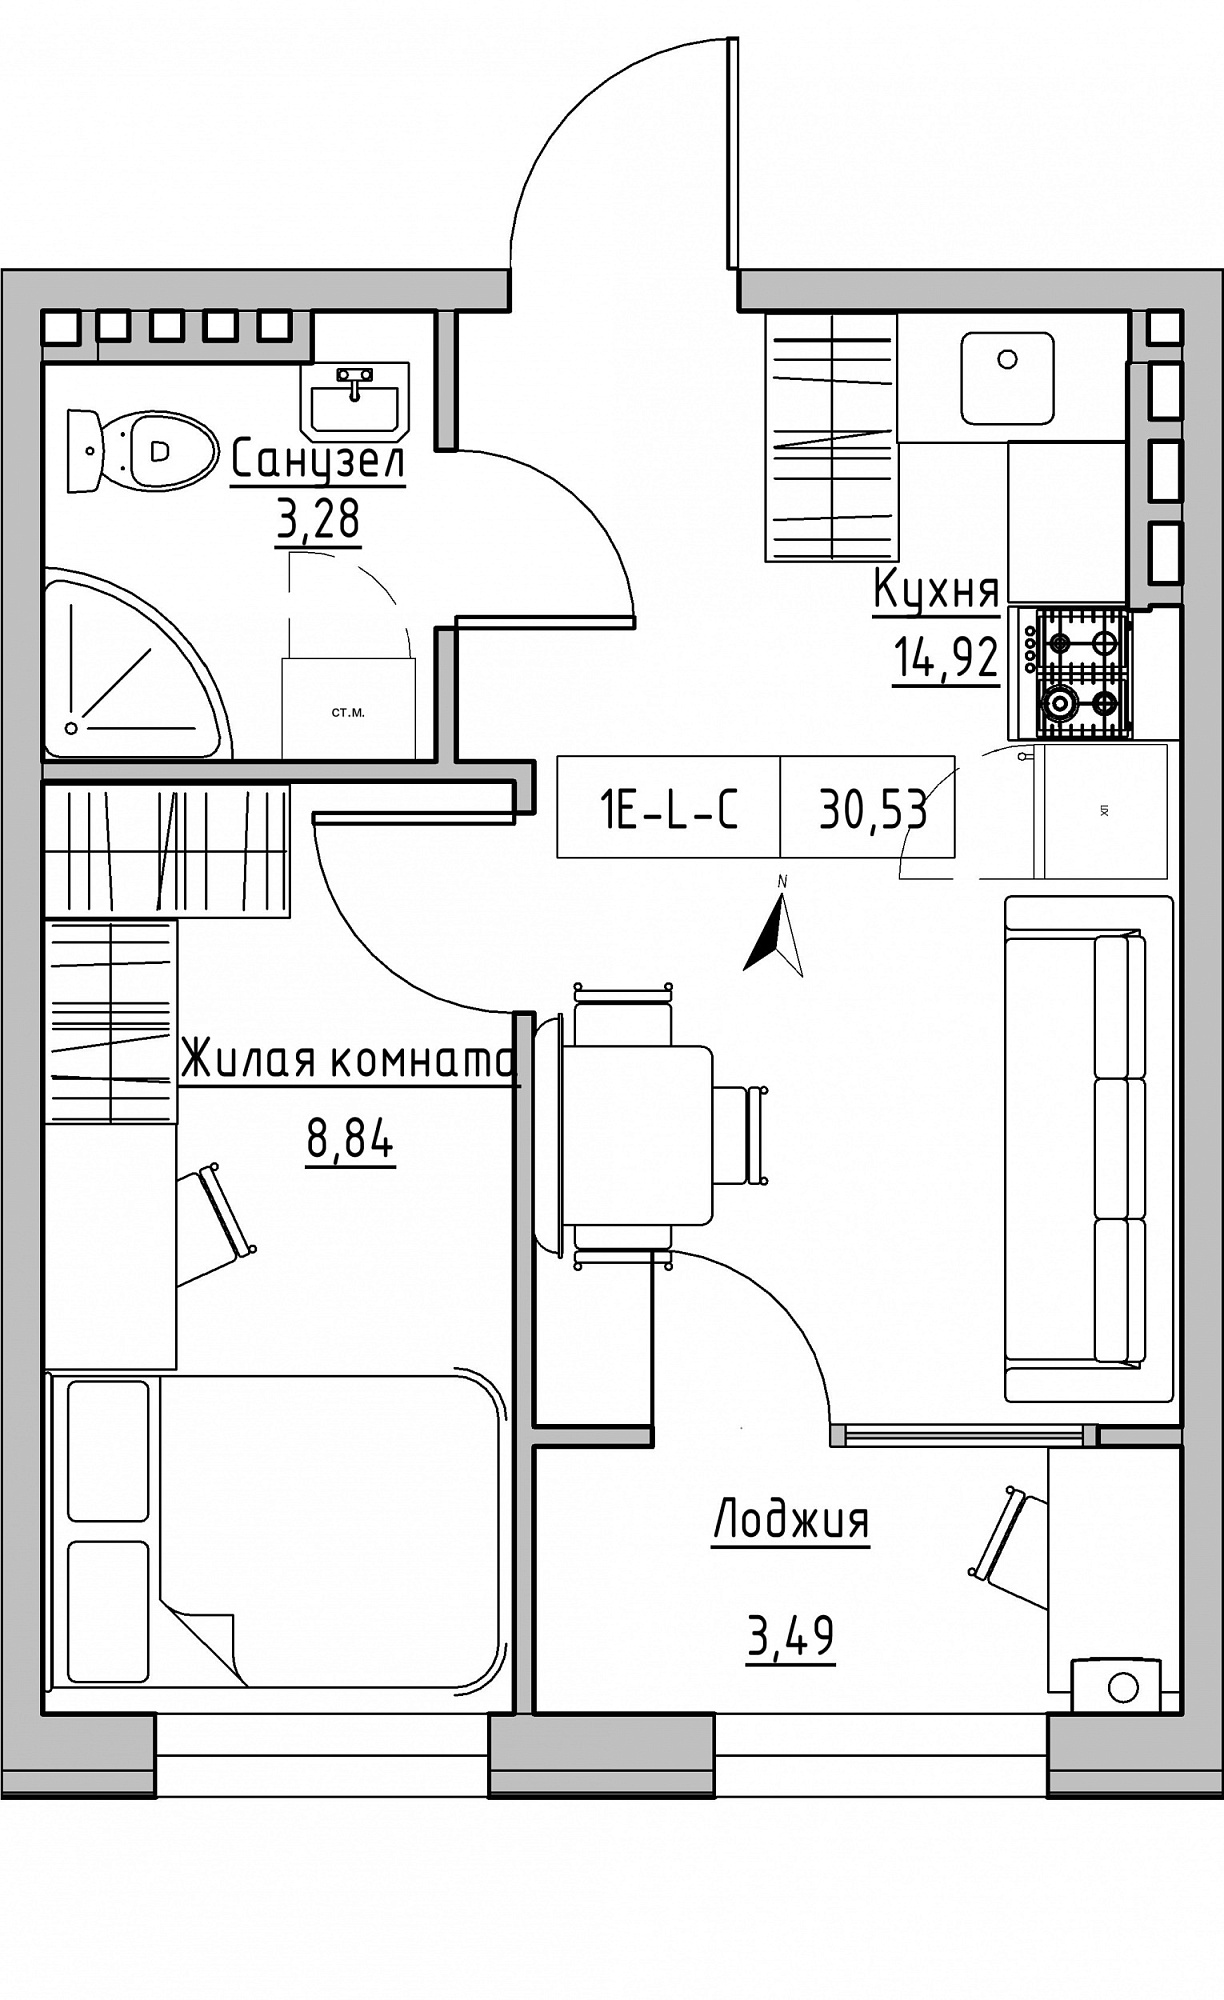 Планування 1-к квартира площею 30.53м2, KS-024-04/0008.